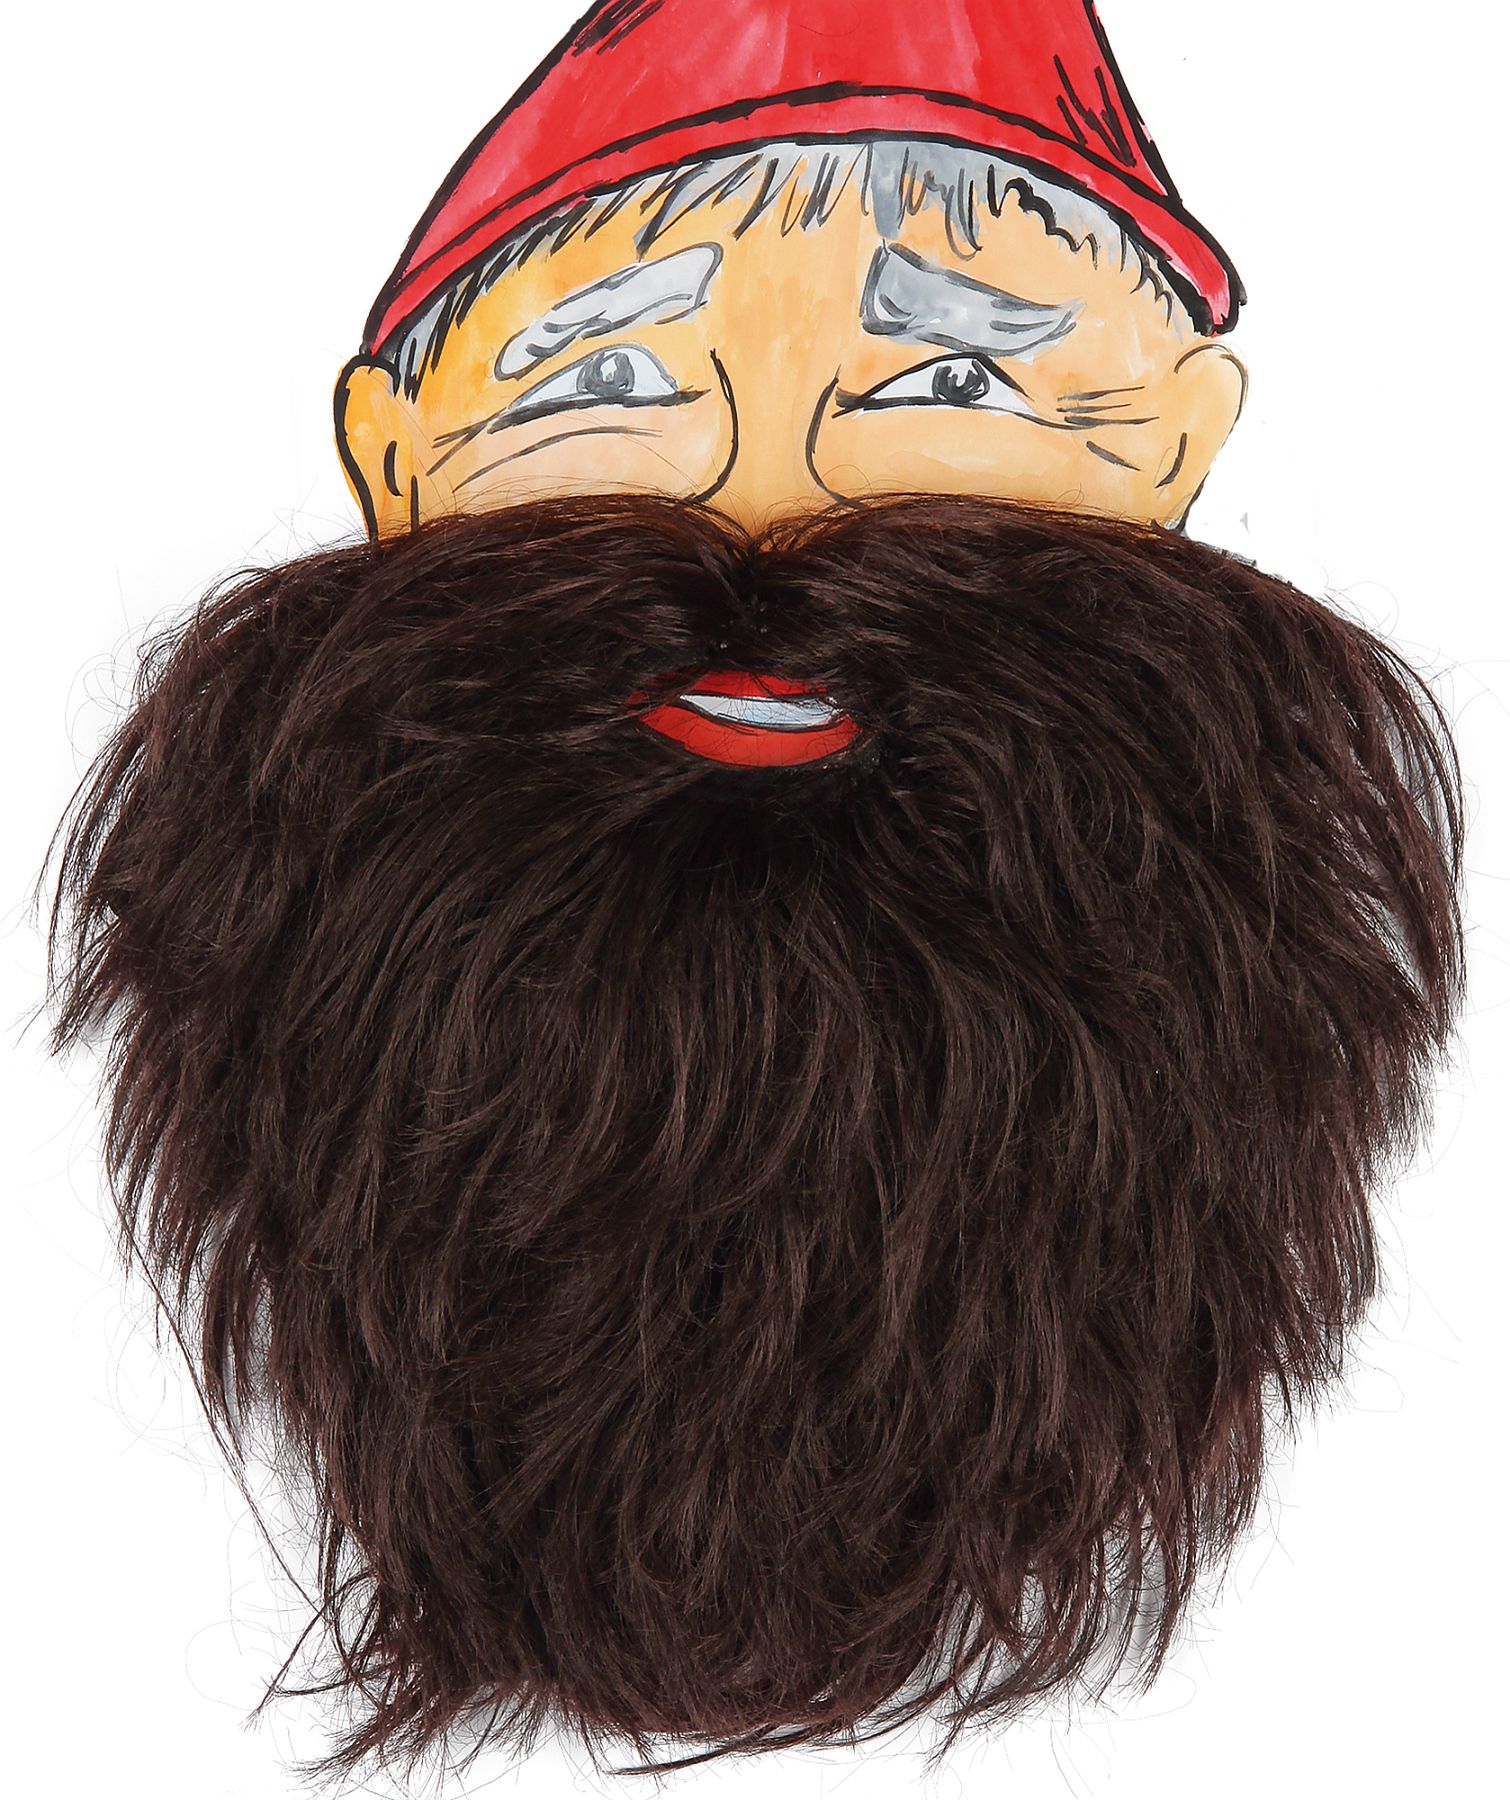 Dwarf beard, brown